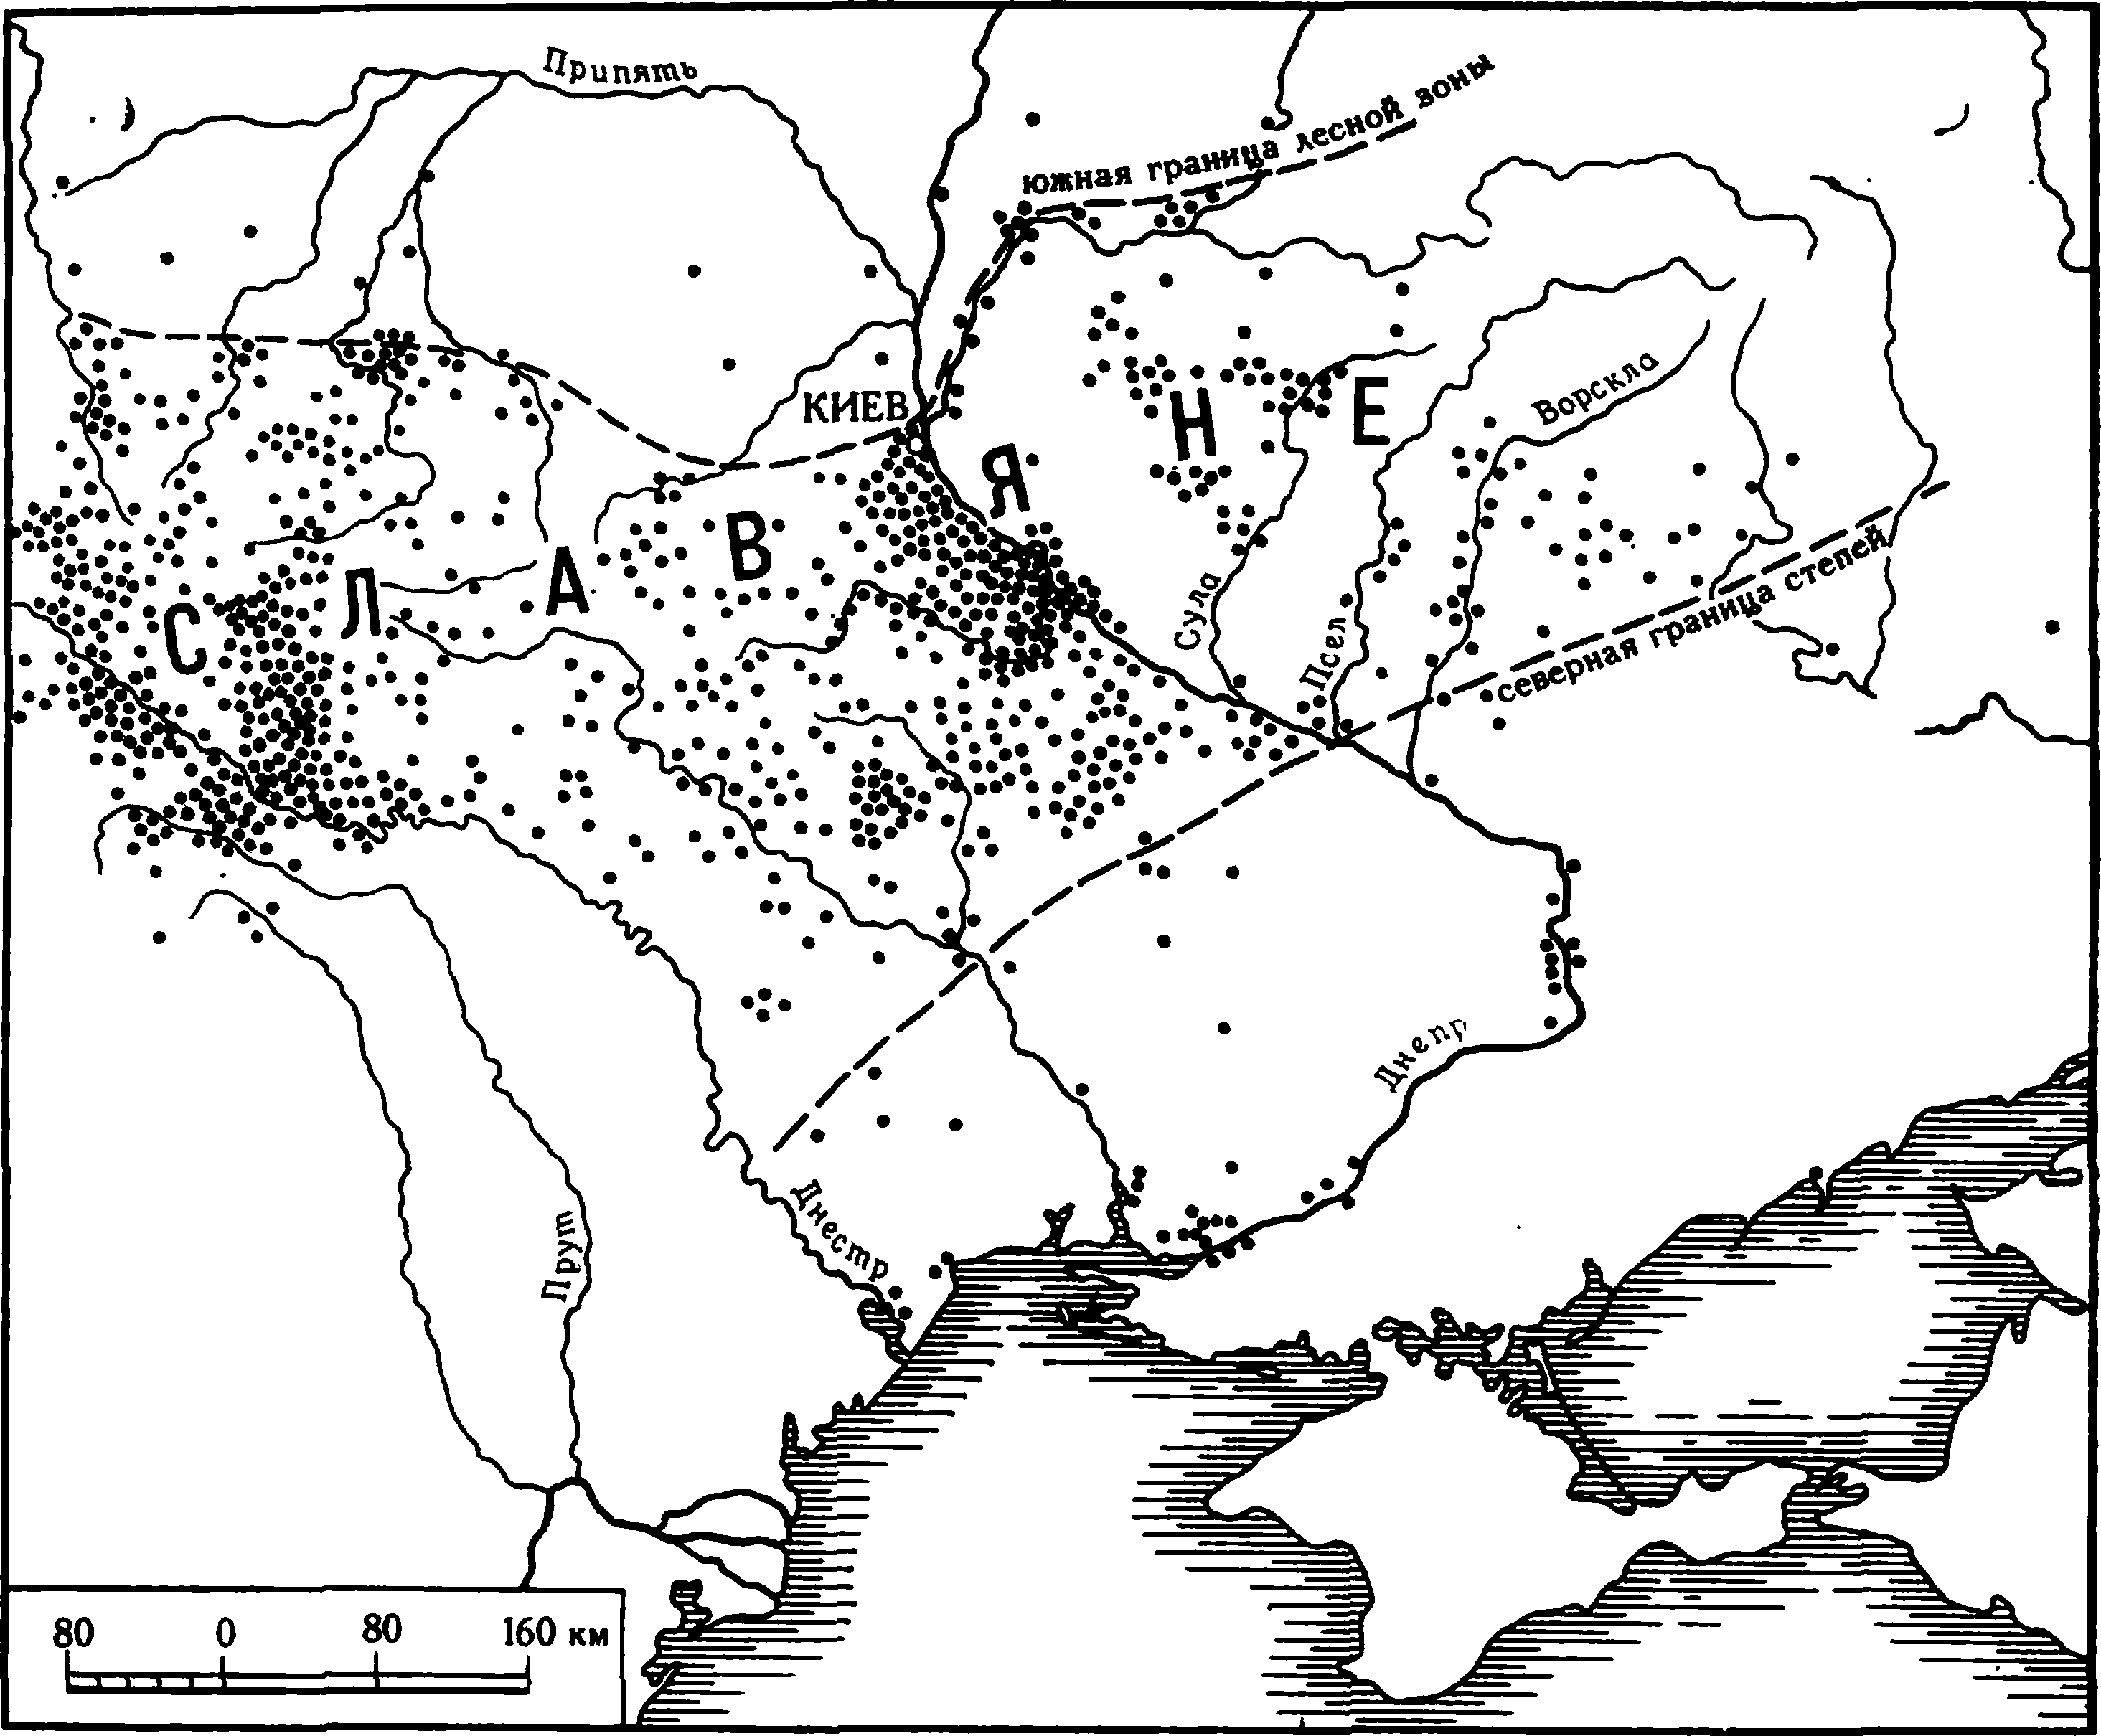 Места находок римских монет и монетных кладов (I—IV вв. н. 9.) в зоне расселения славян